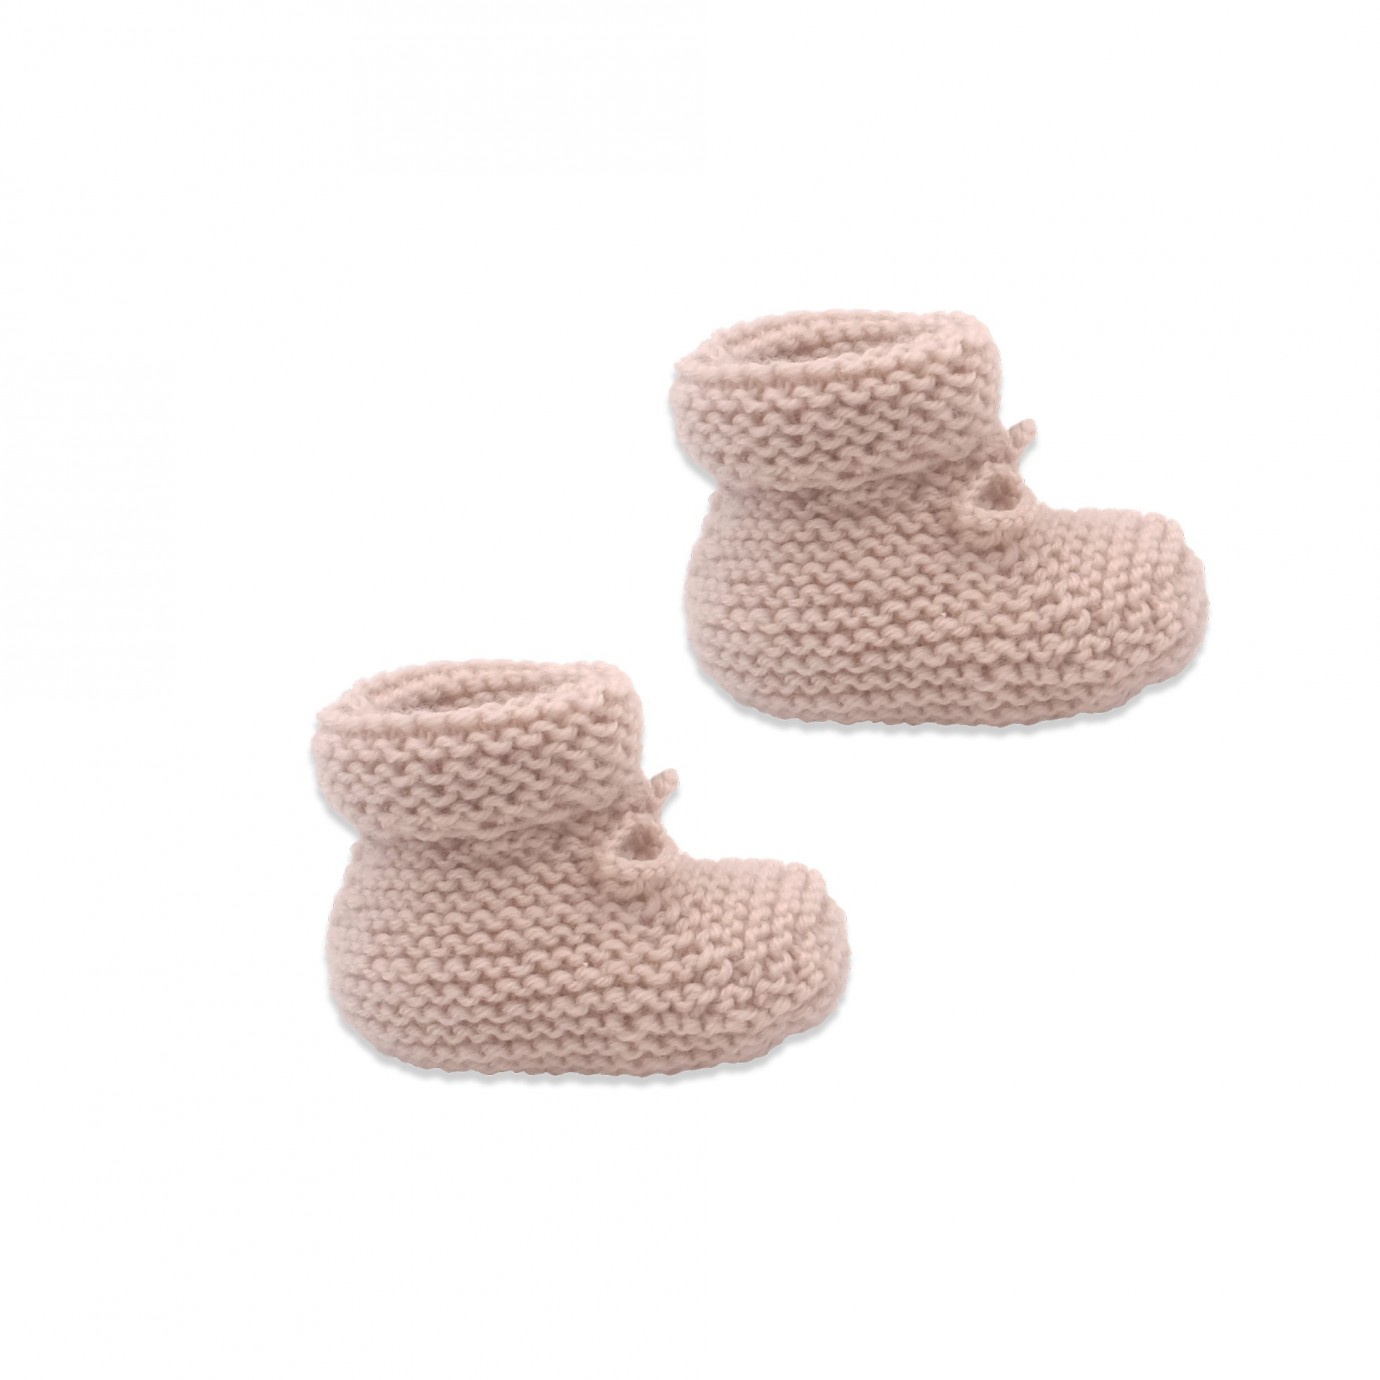 Nos patrons préférés pour tricoter des chaussons pour bébé - Marie